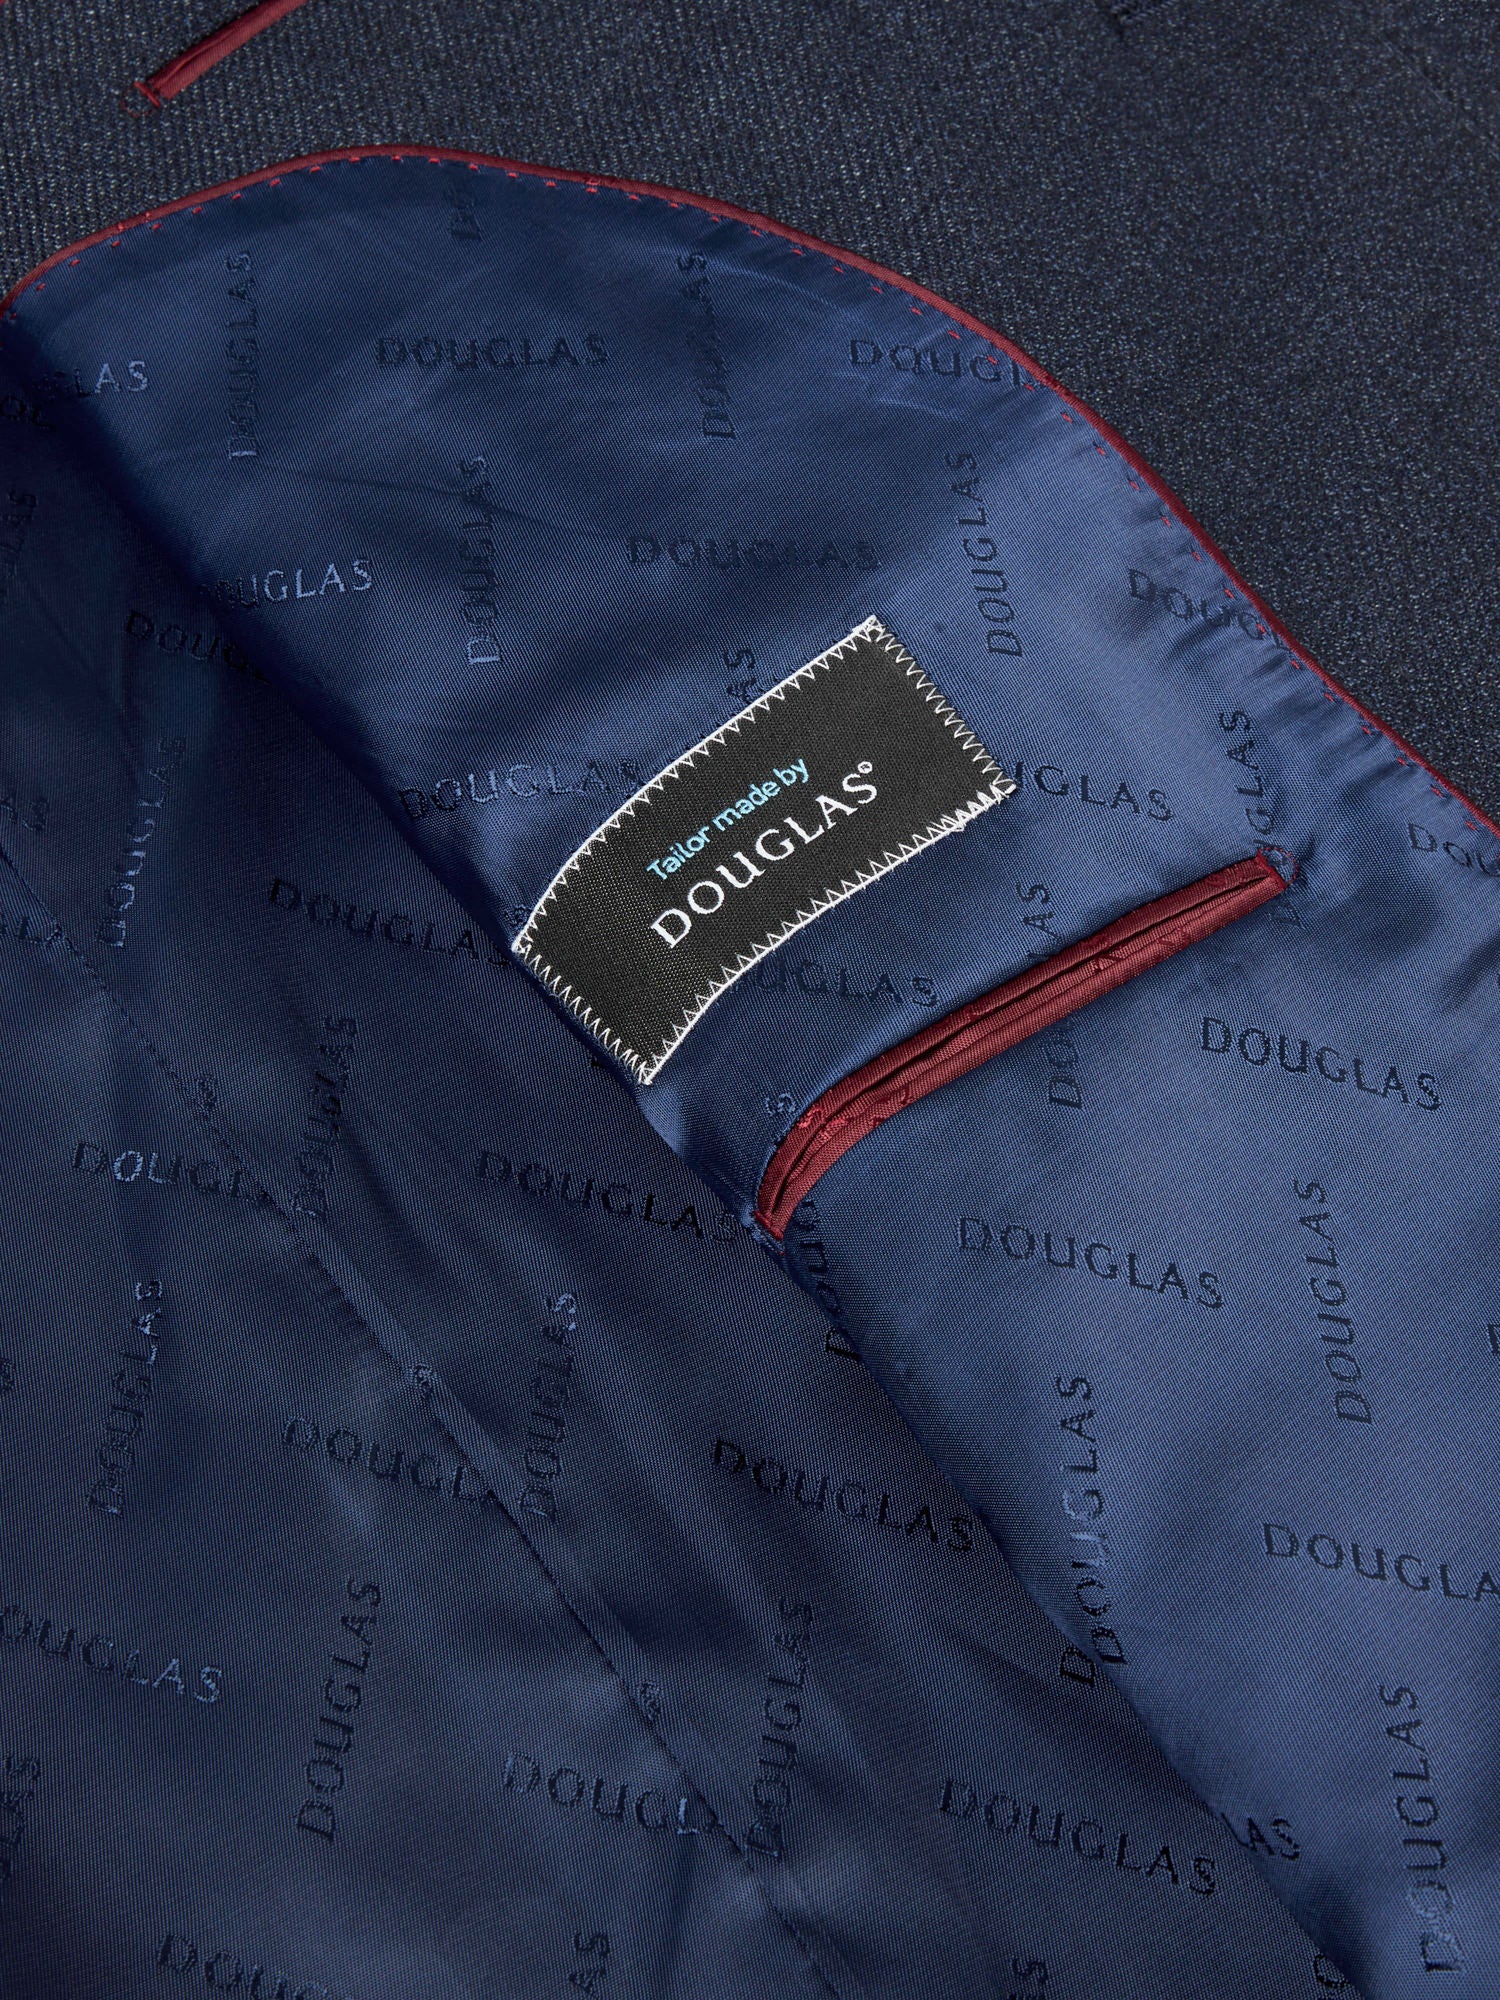 Douglas Blue Mix & Match Romelo Suit Jacket Short Length